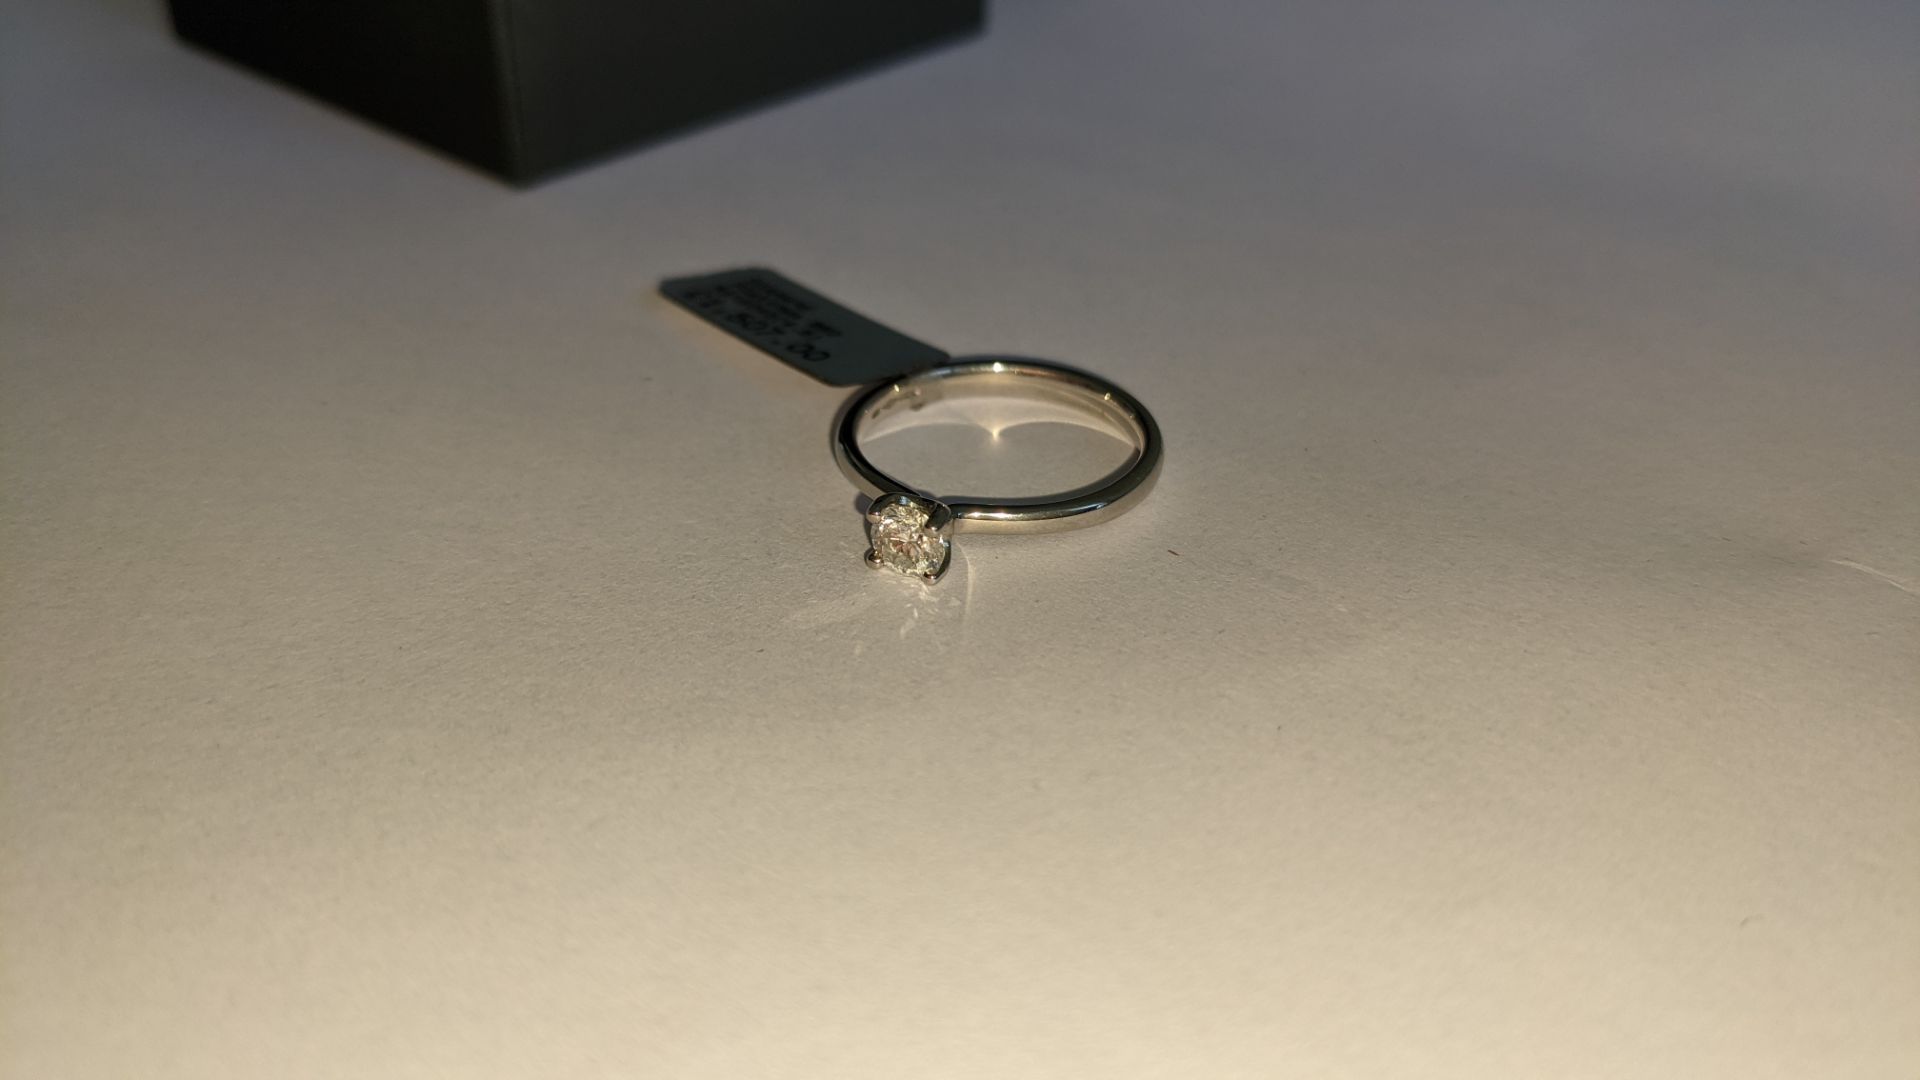 Single stone diamond & platinum 950 ring with 0.35ct H/Si diamond, RRP £1,507 - Image 12 of 29